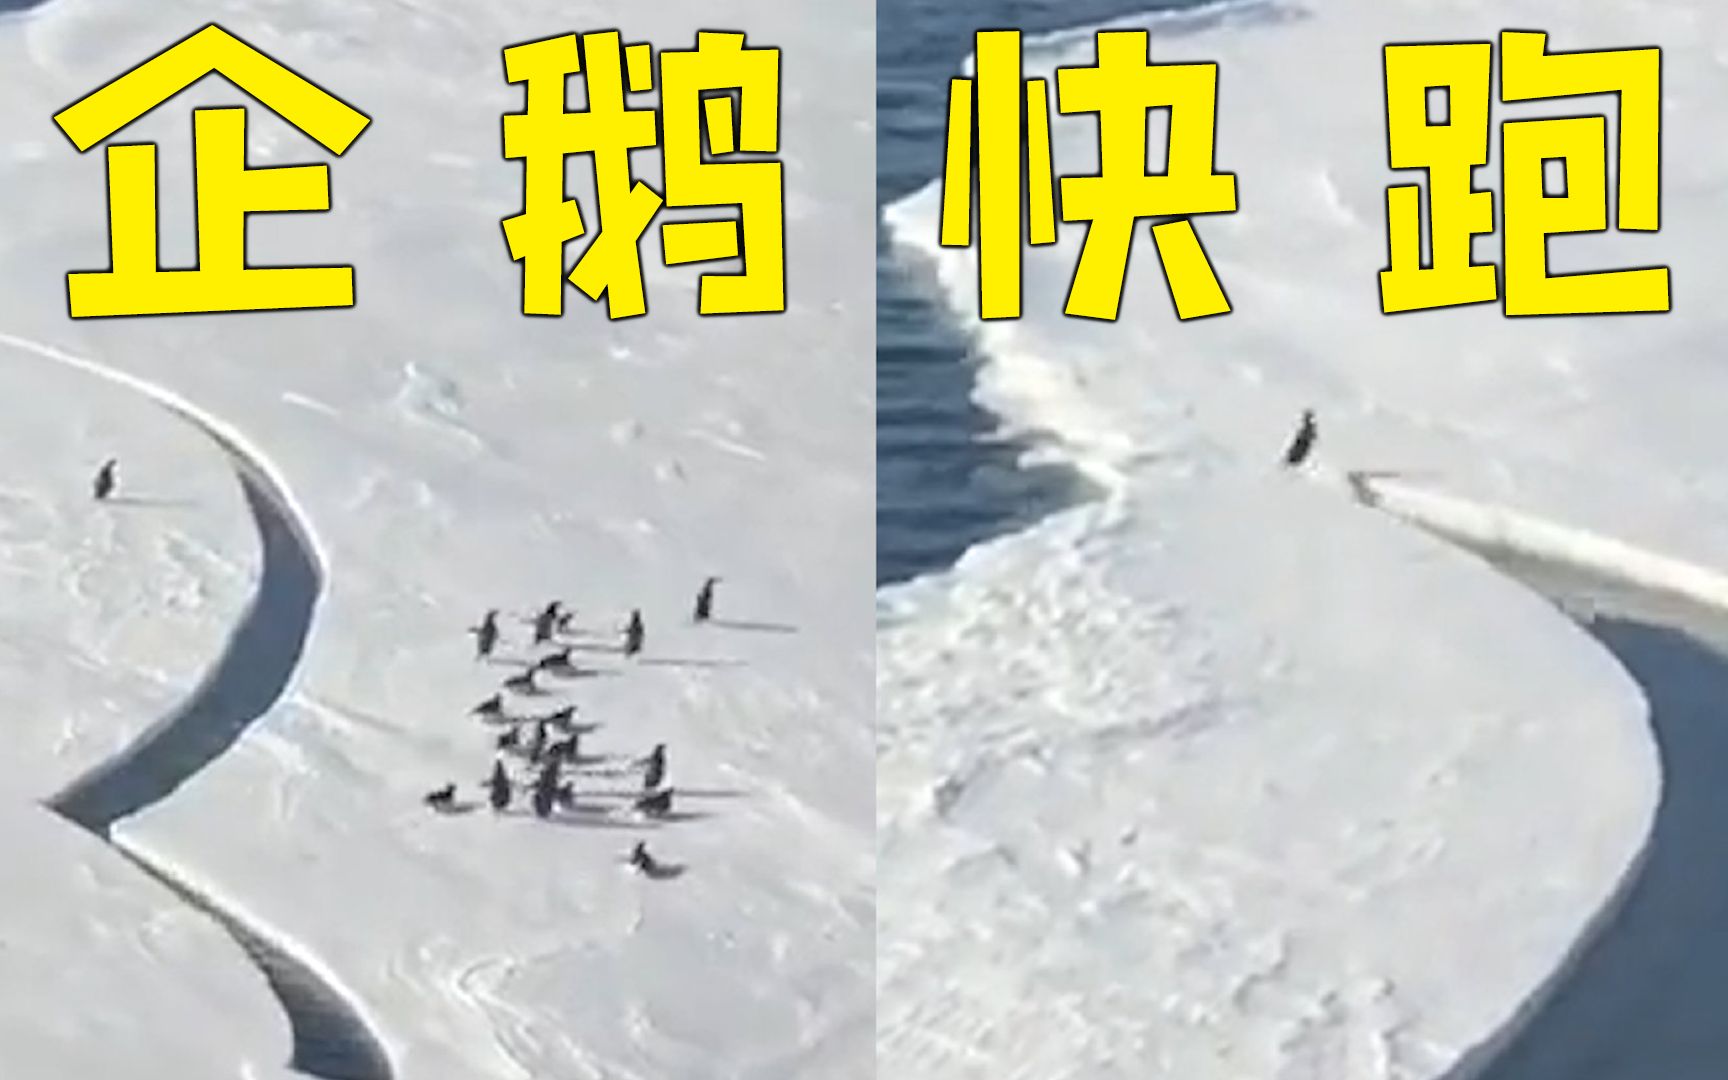 小企鹅脱队遇冰层断裂 最后一秒狂奔纵跃与伙伴团聚